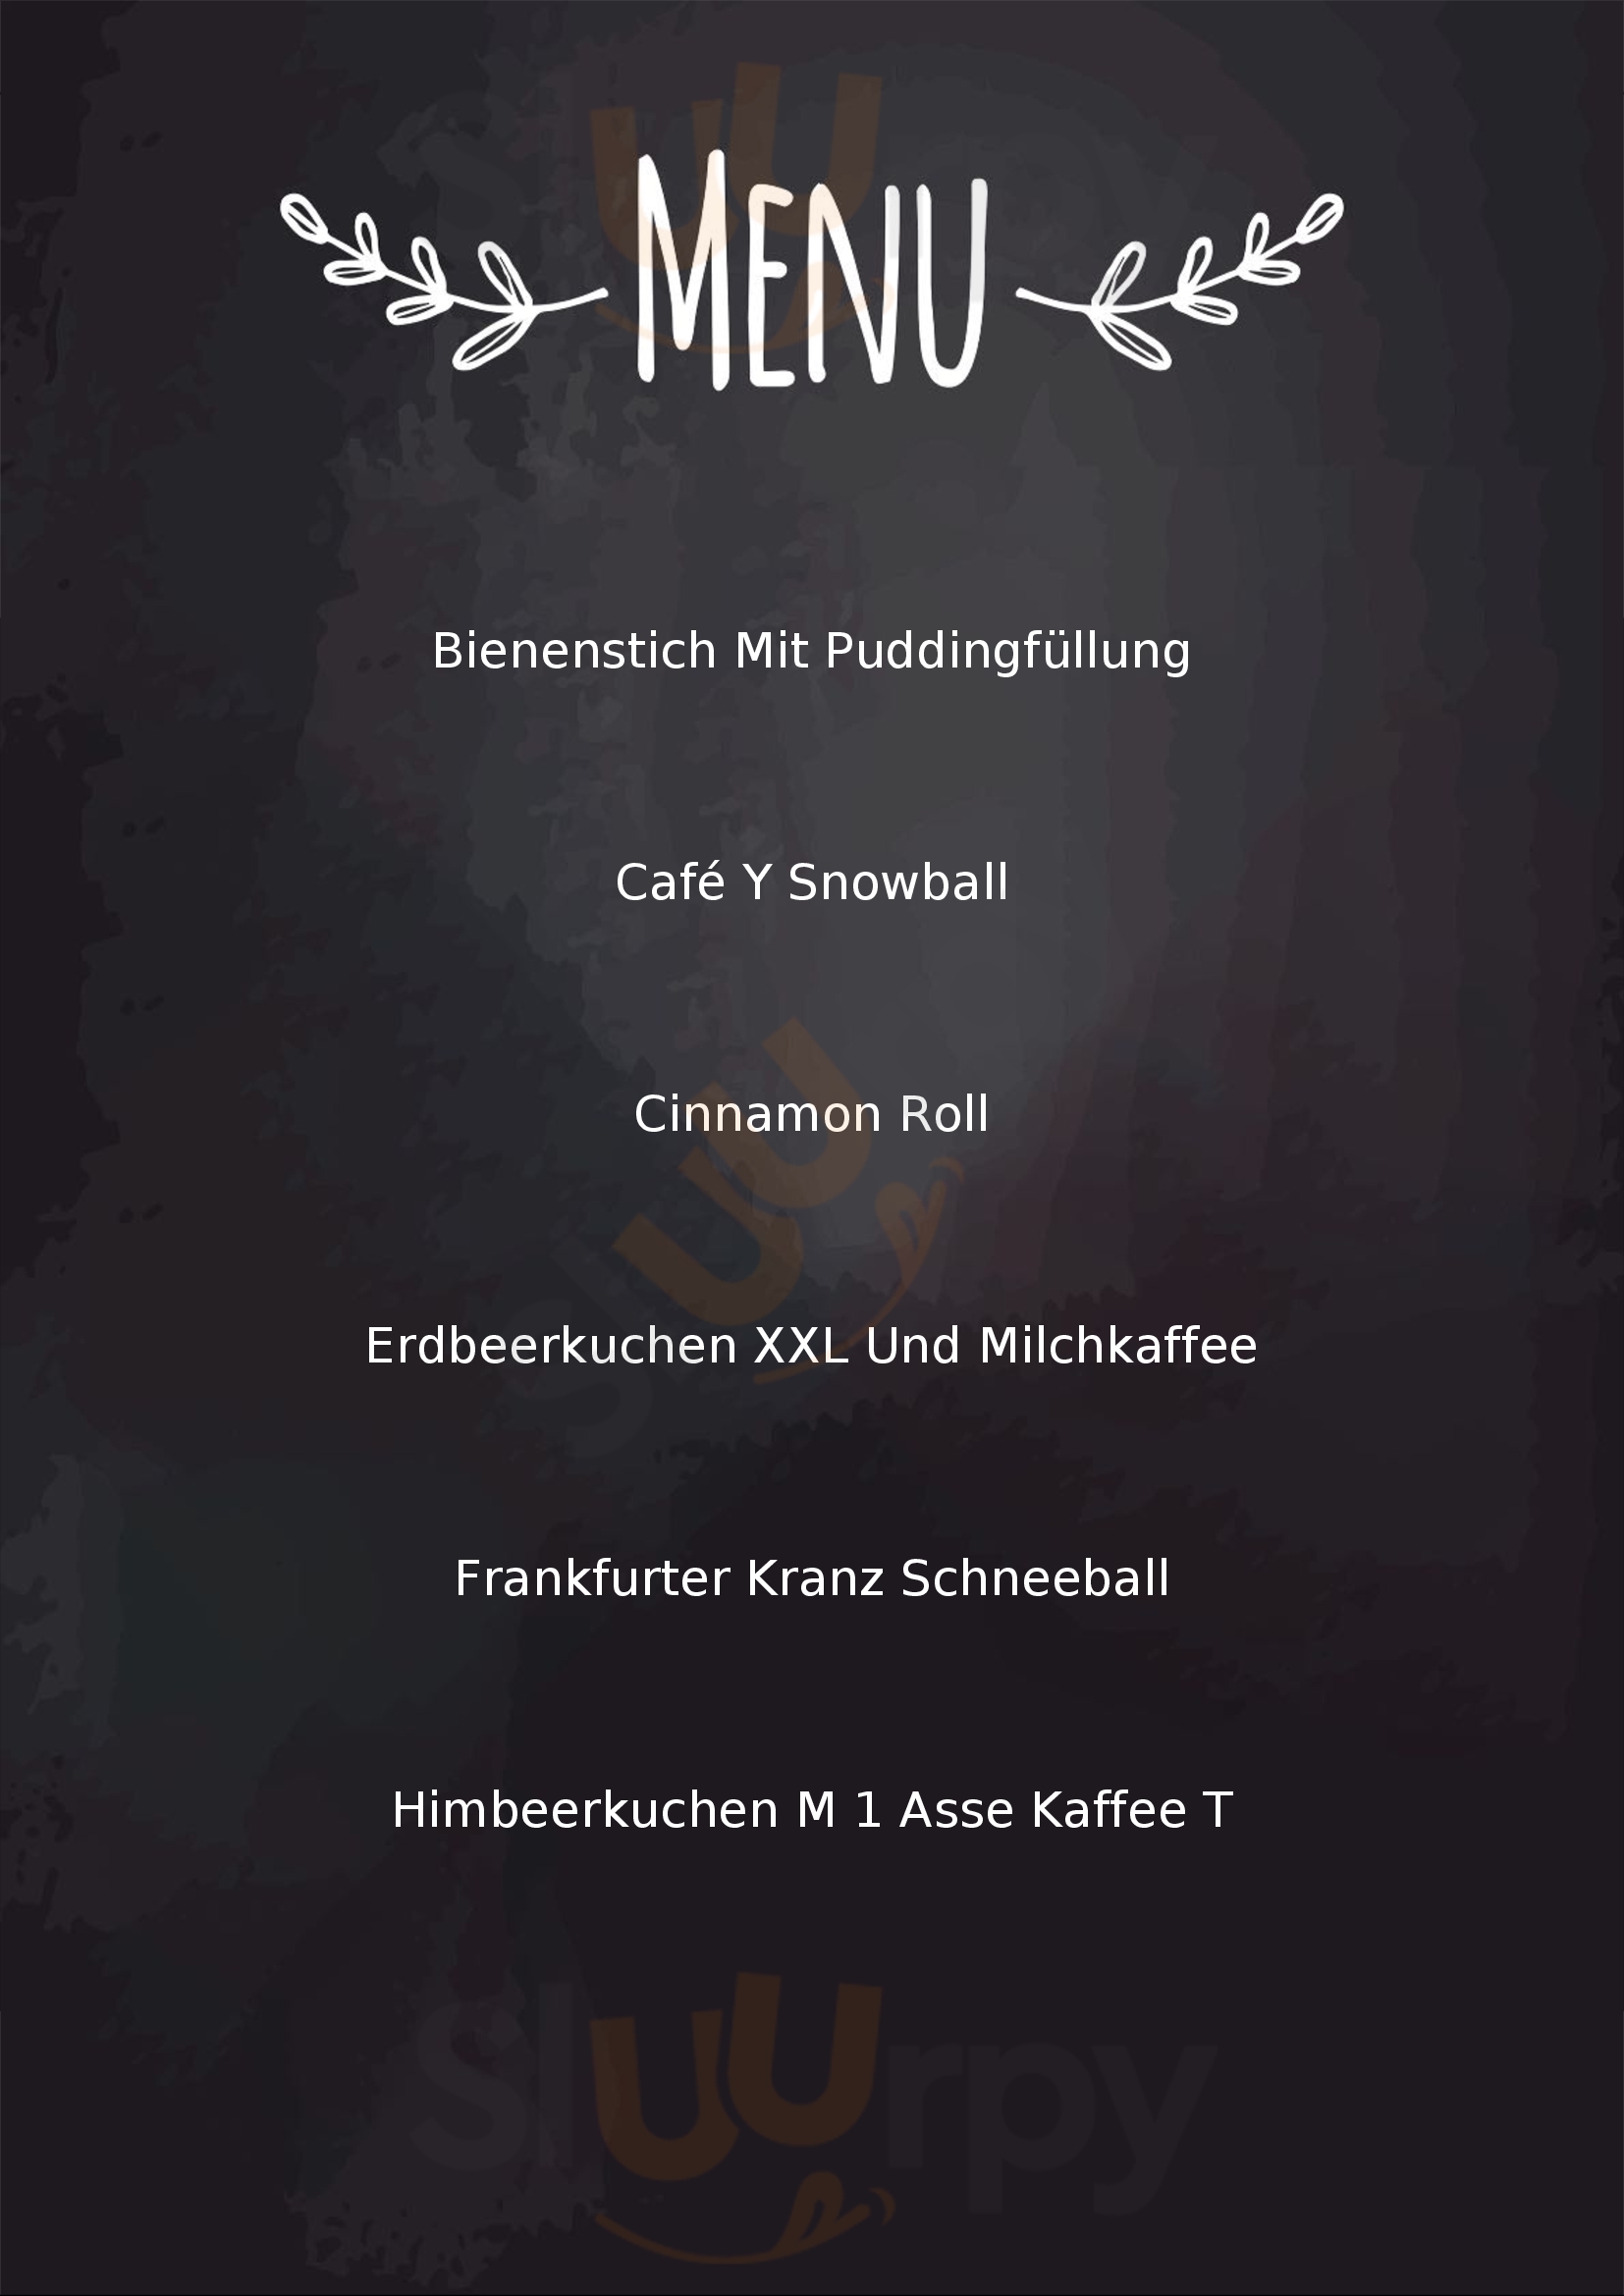 Schoebel Baeckerei Und Cafe Rothenburg Menu - 1